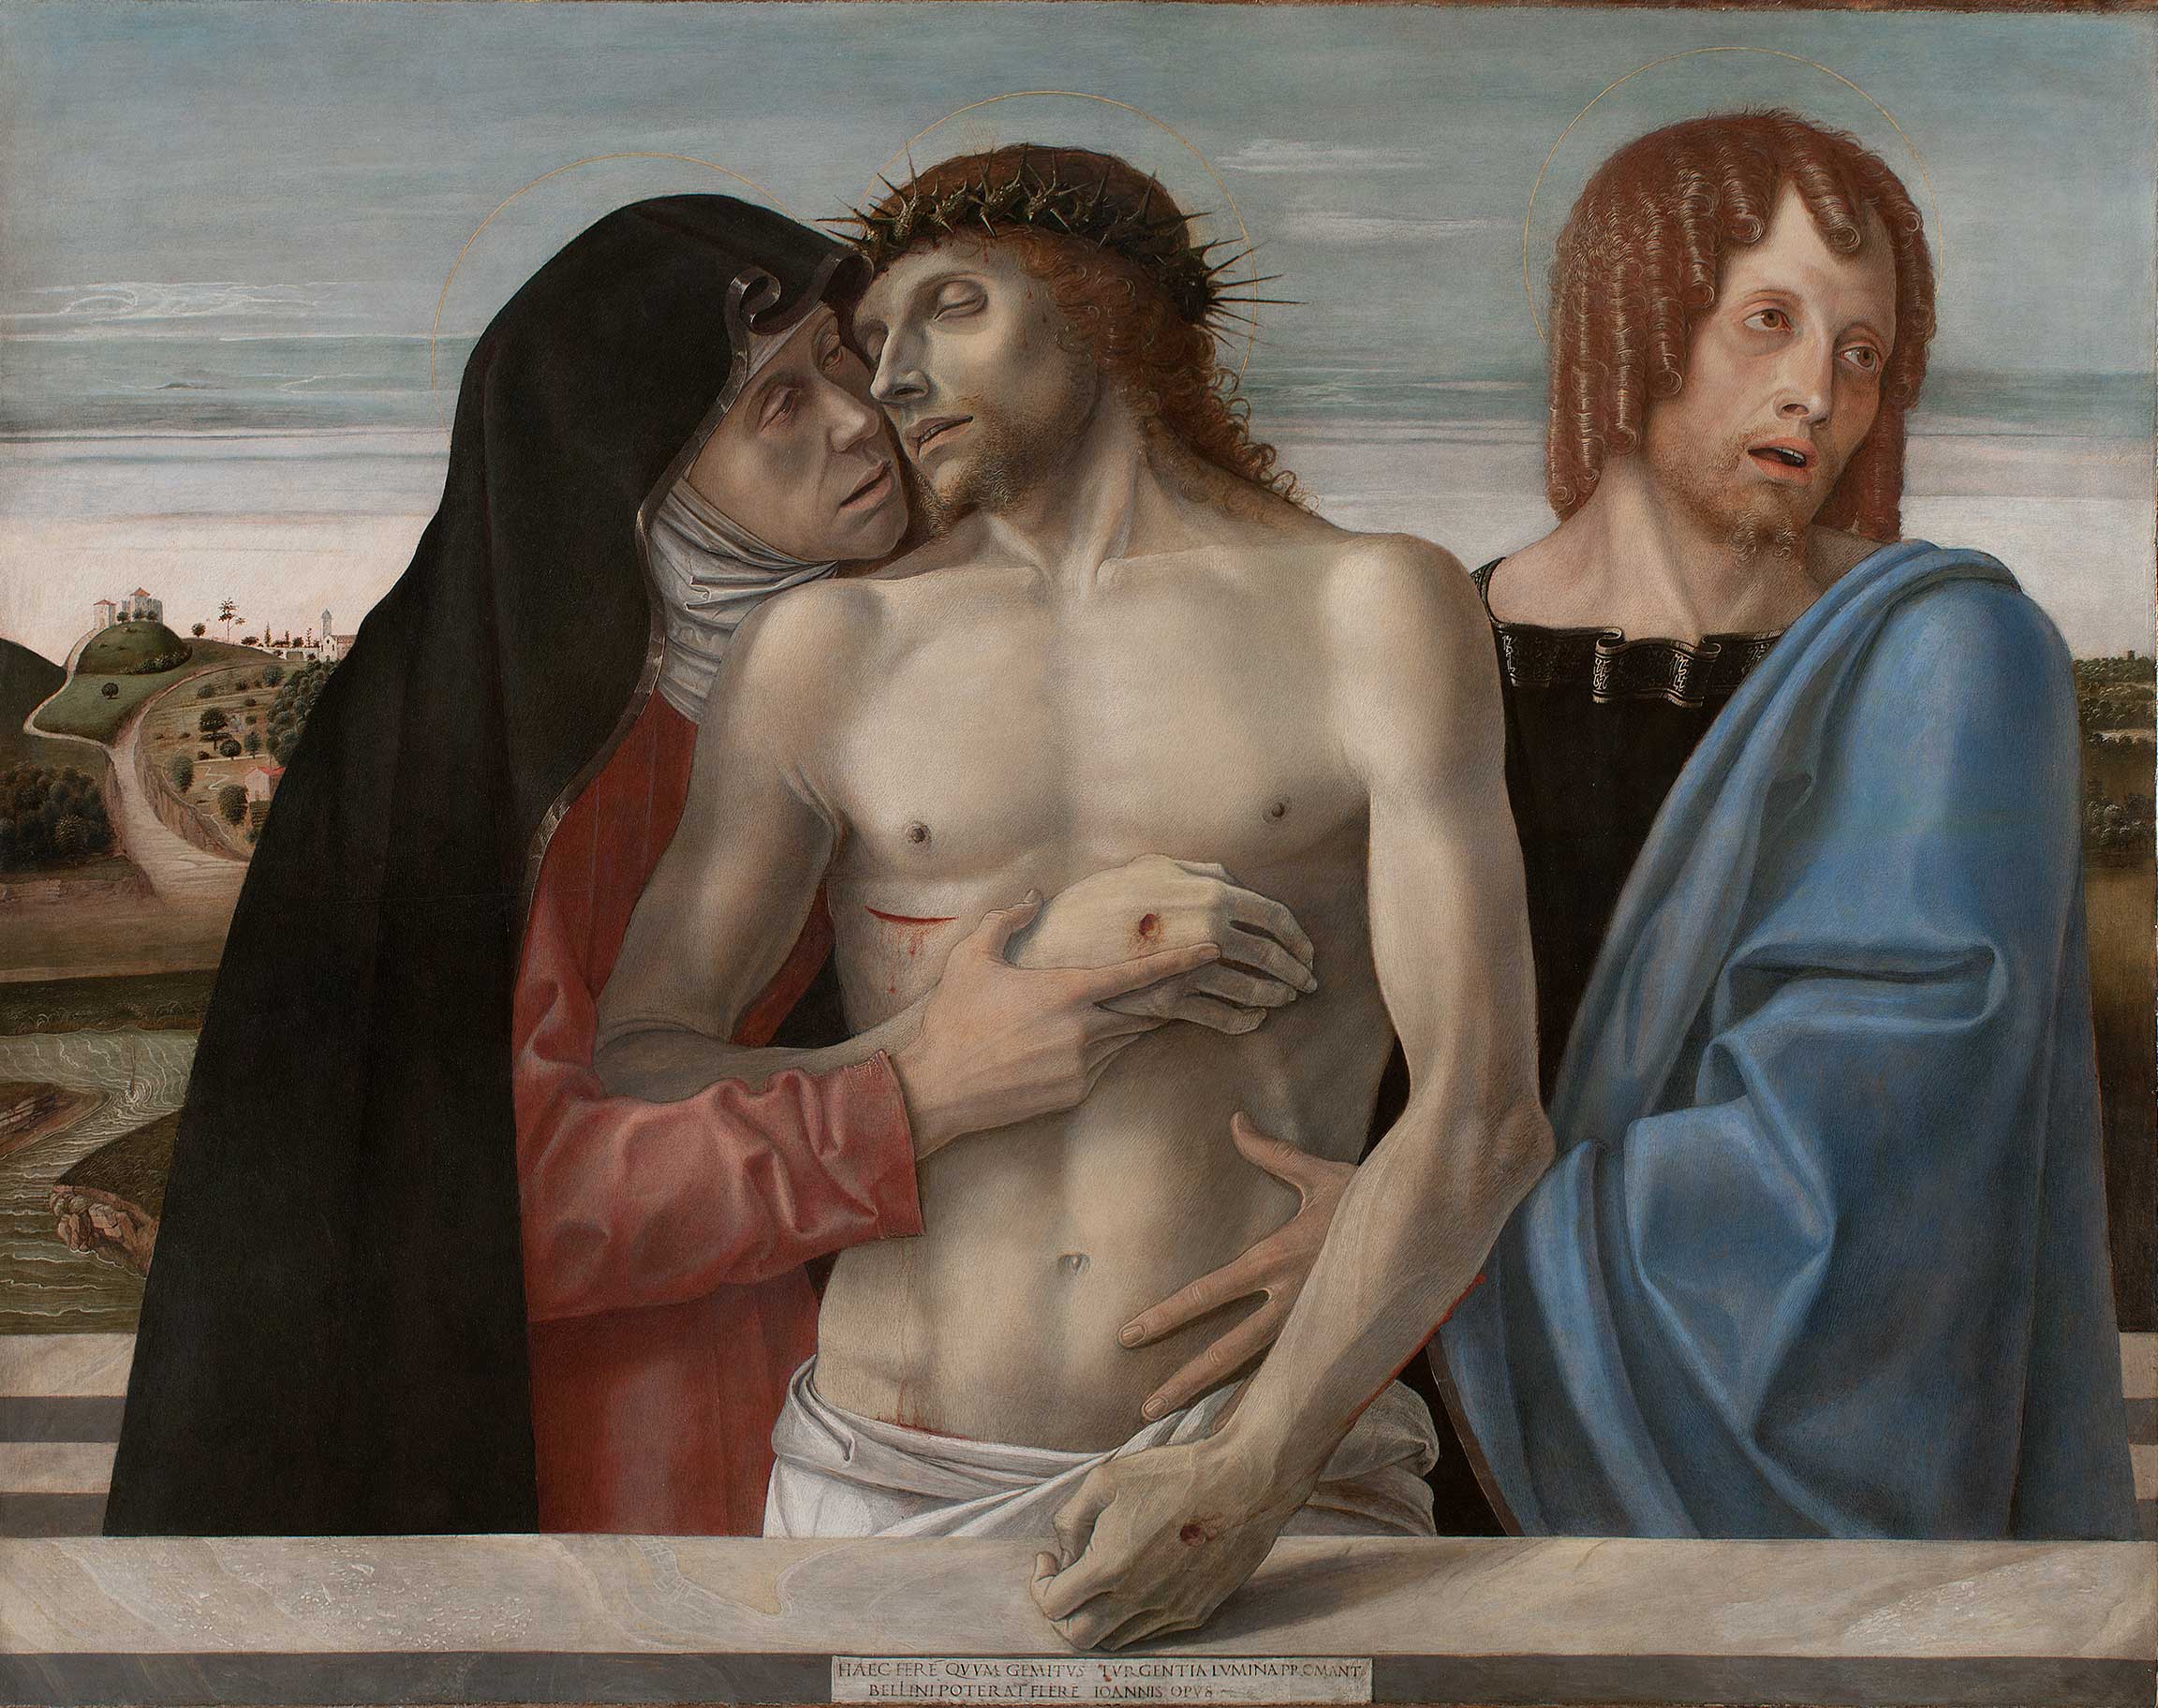 Pietà by Giovanni Bellini - ca. 1460 - 86 × 107 cm Pinacoteca di Brera